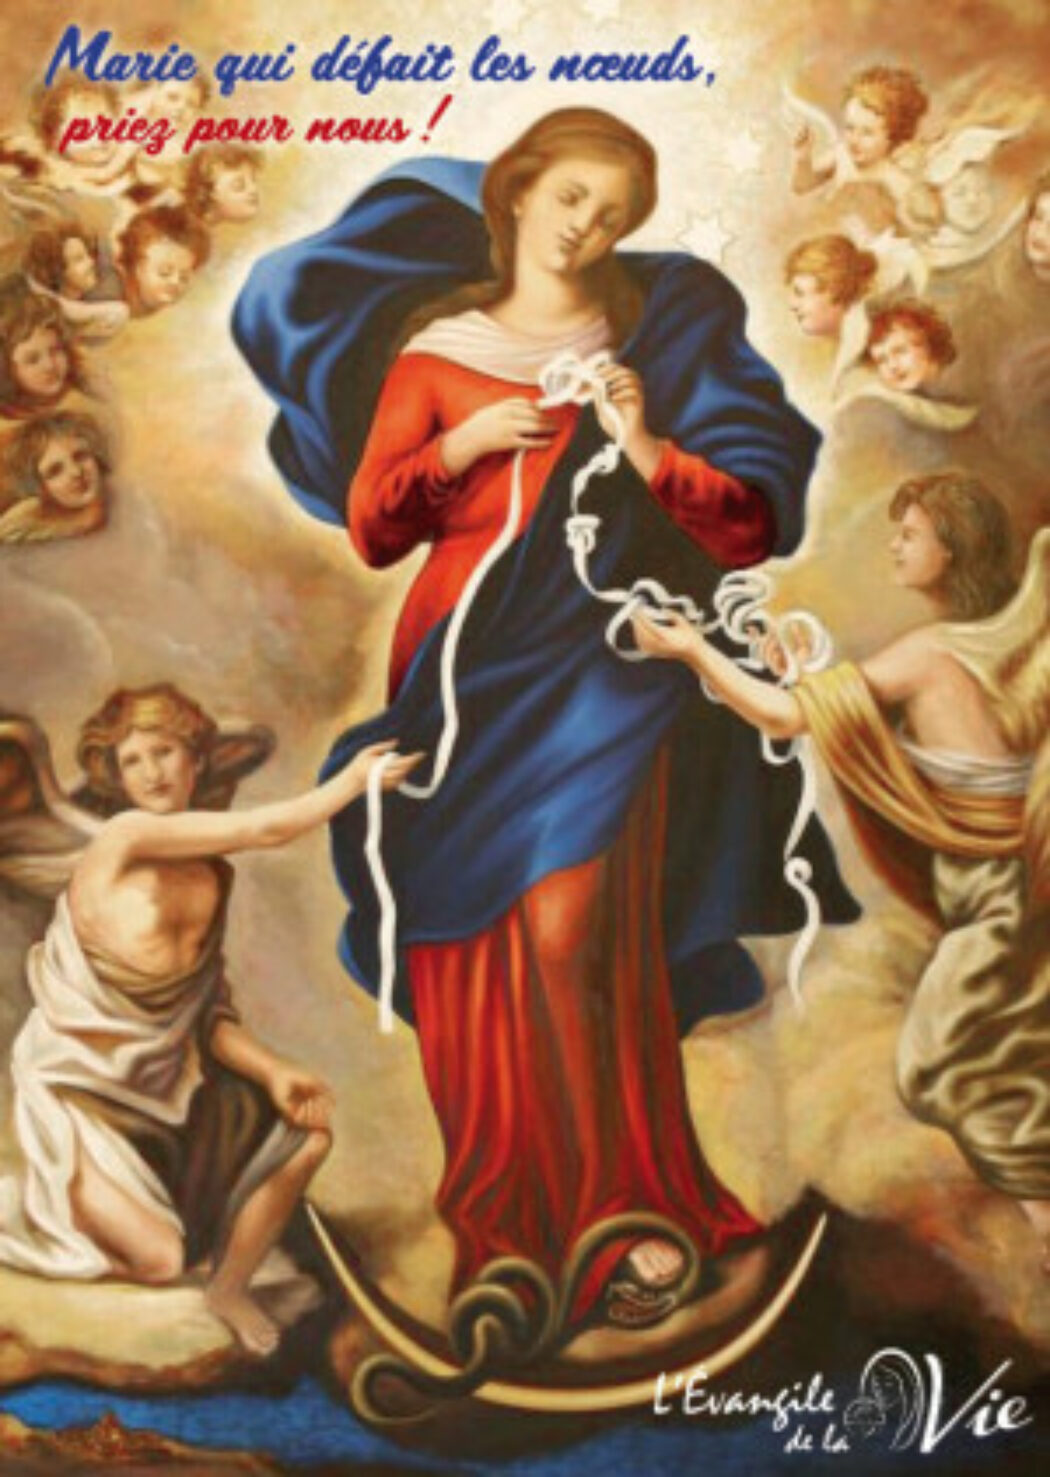 Consécration au Coeur immaculé de Marie : après la Pologne, le Portugal et l’Espagne